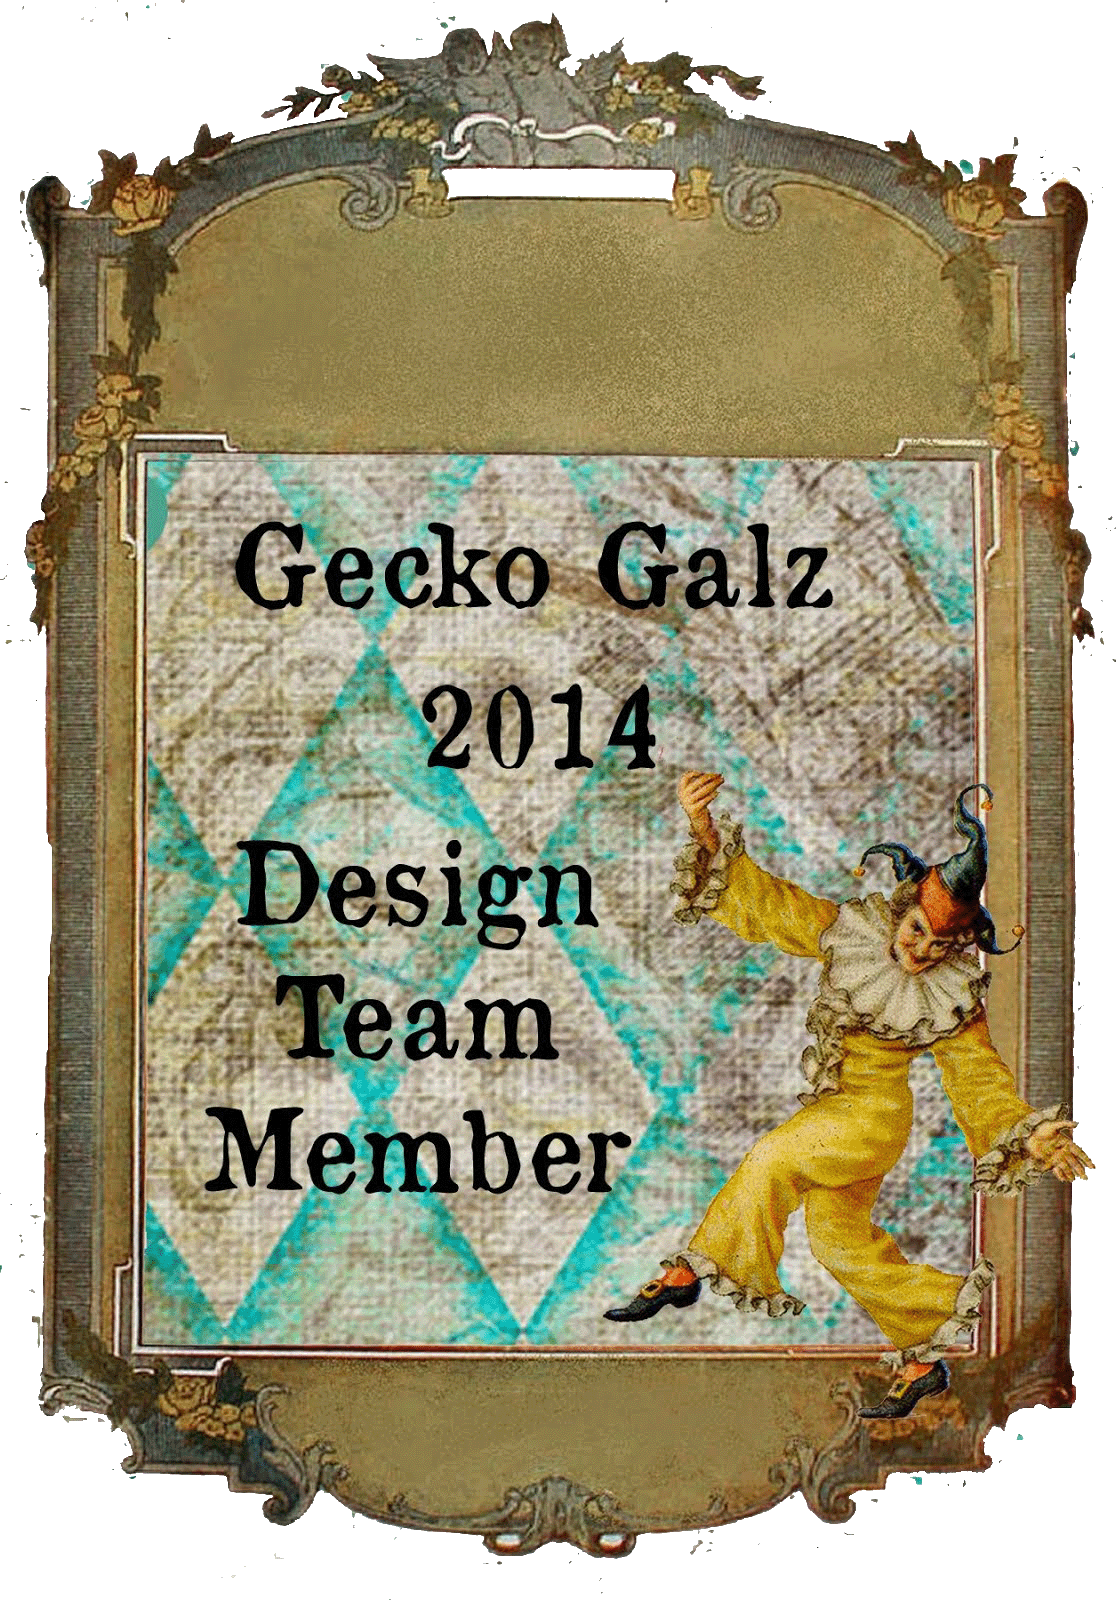 Gecko Galz Design Team 2014